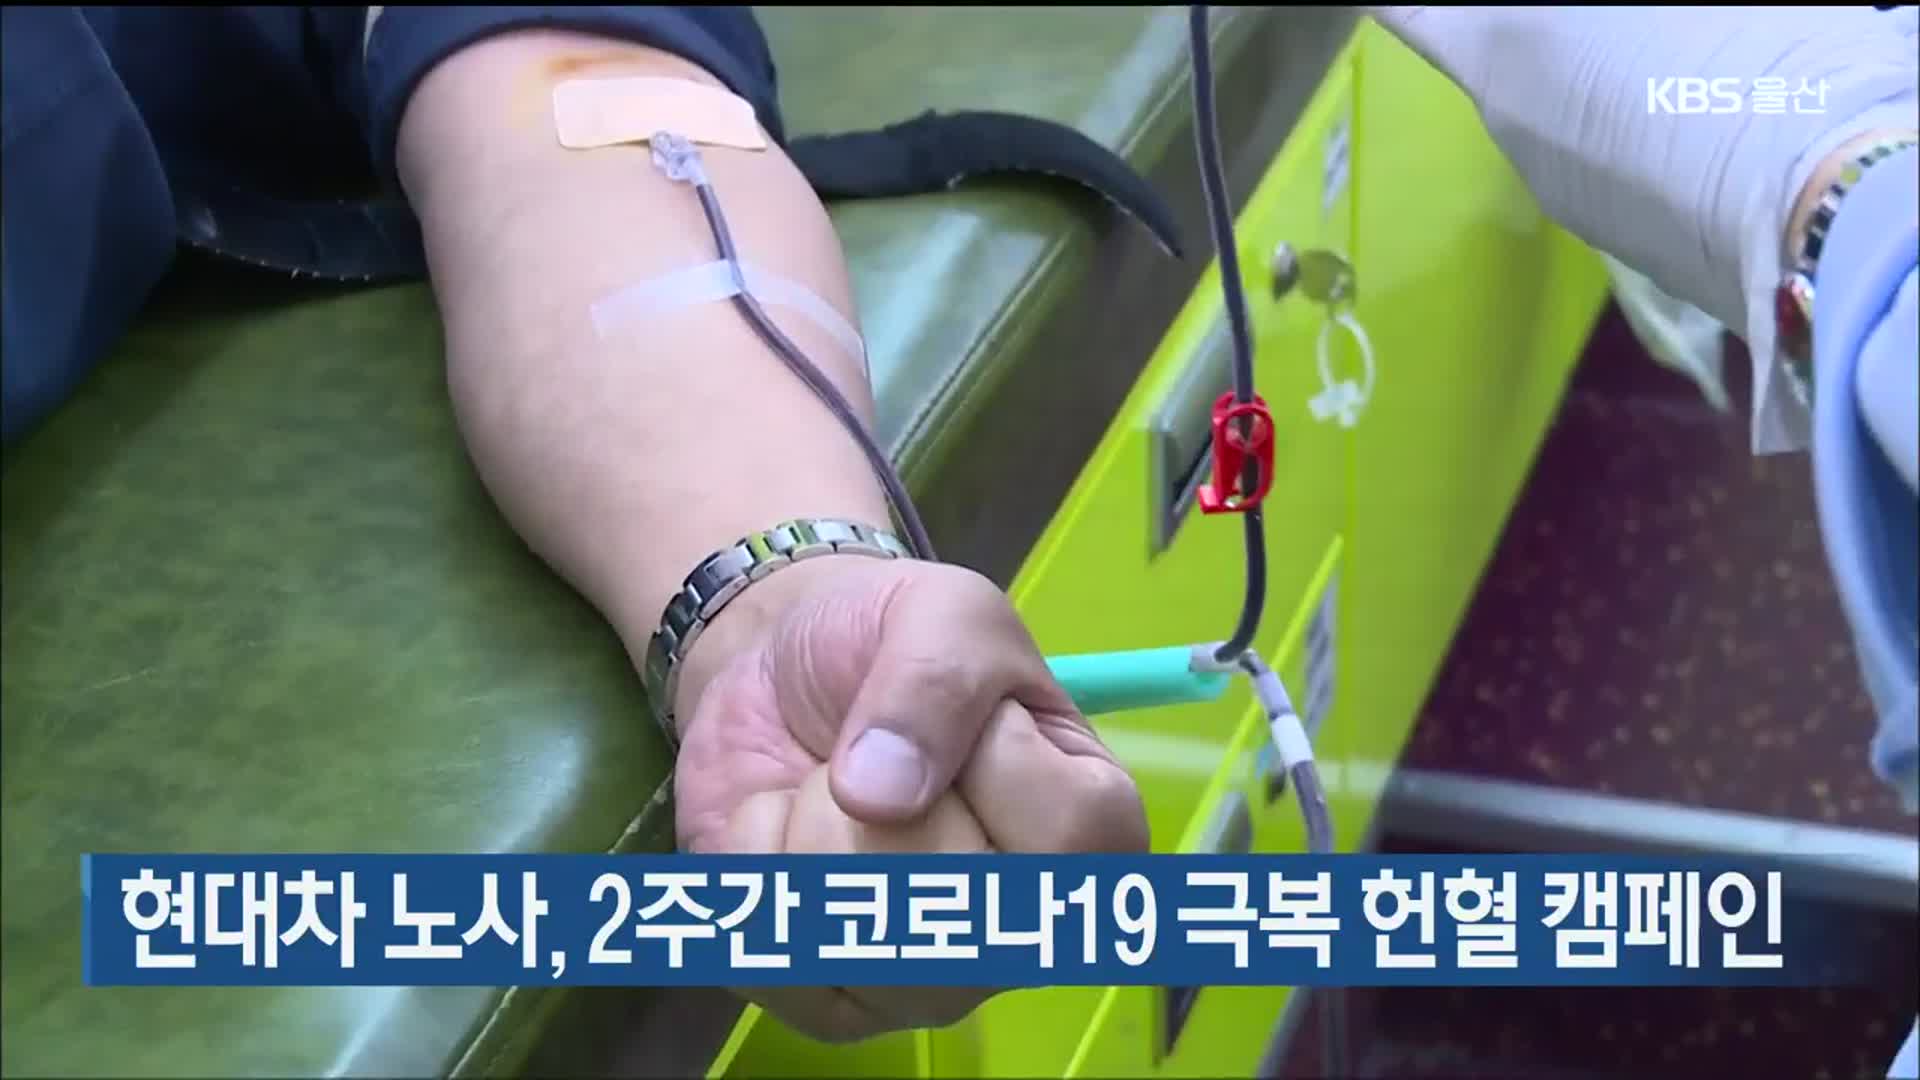 현대차 노사, 2주간 코로나19 극복 헌혈 캠페인